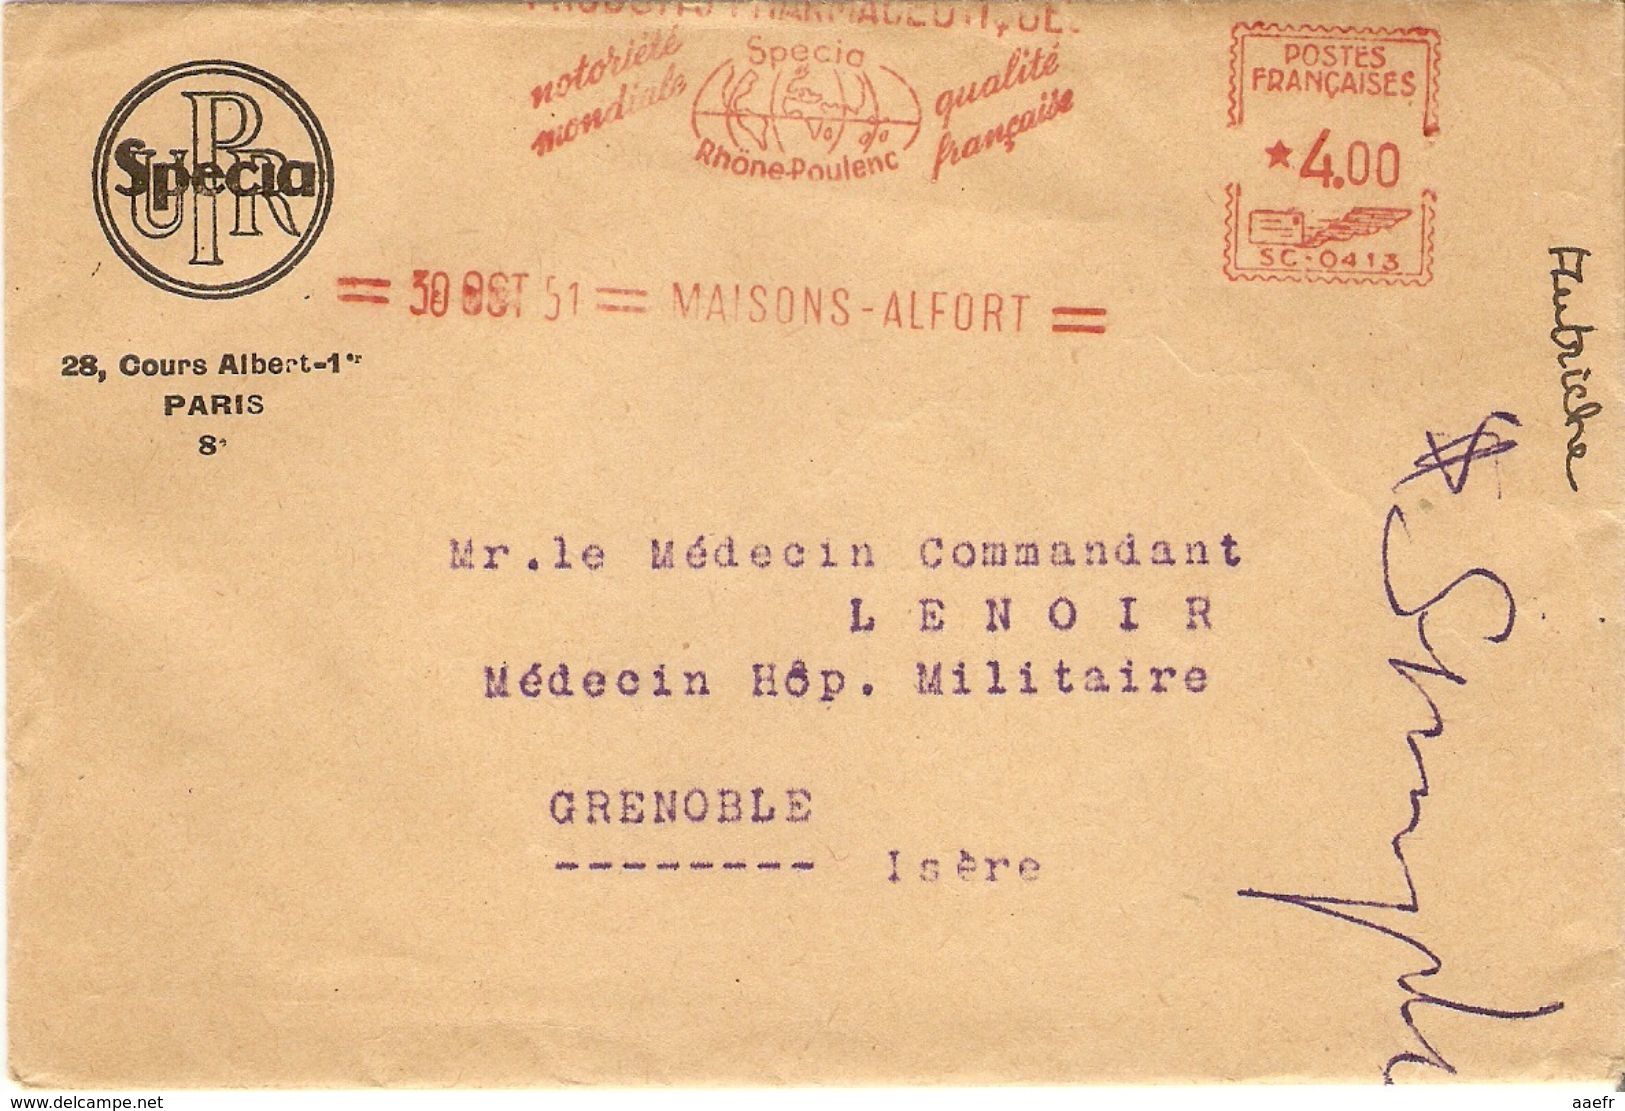 France 1951 - Lettre De Specia/Rhône-Poulenc) Au Médecin Commandant De L' Hôpital Militaire à Grenoble - Flamme  Pub RP - Lettres & Documents